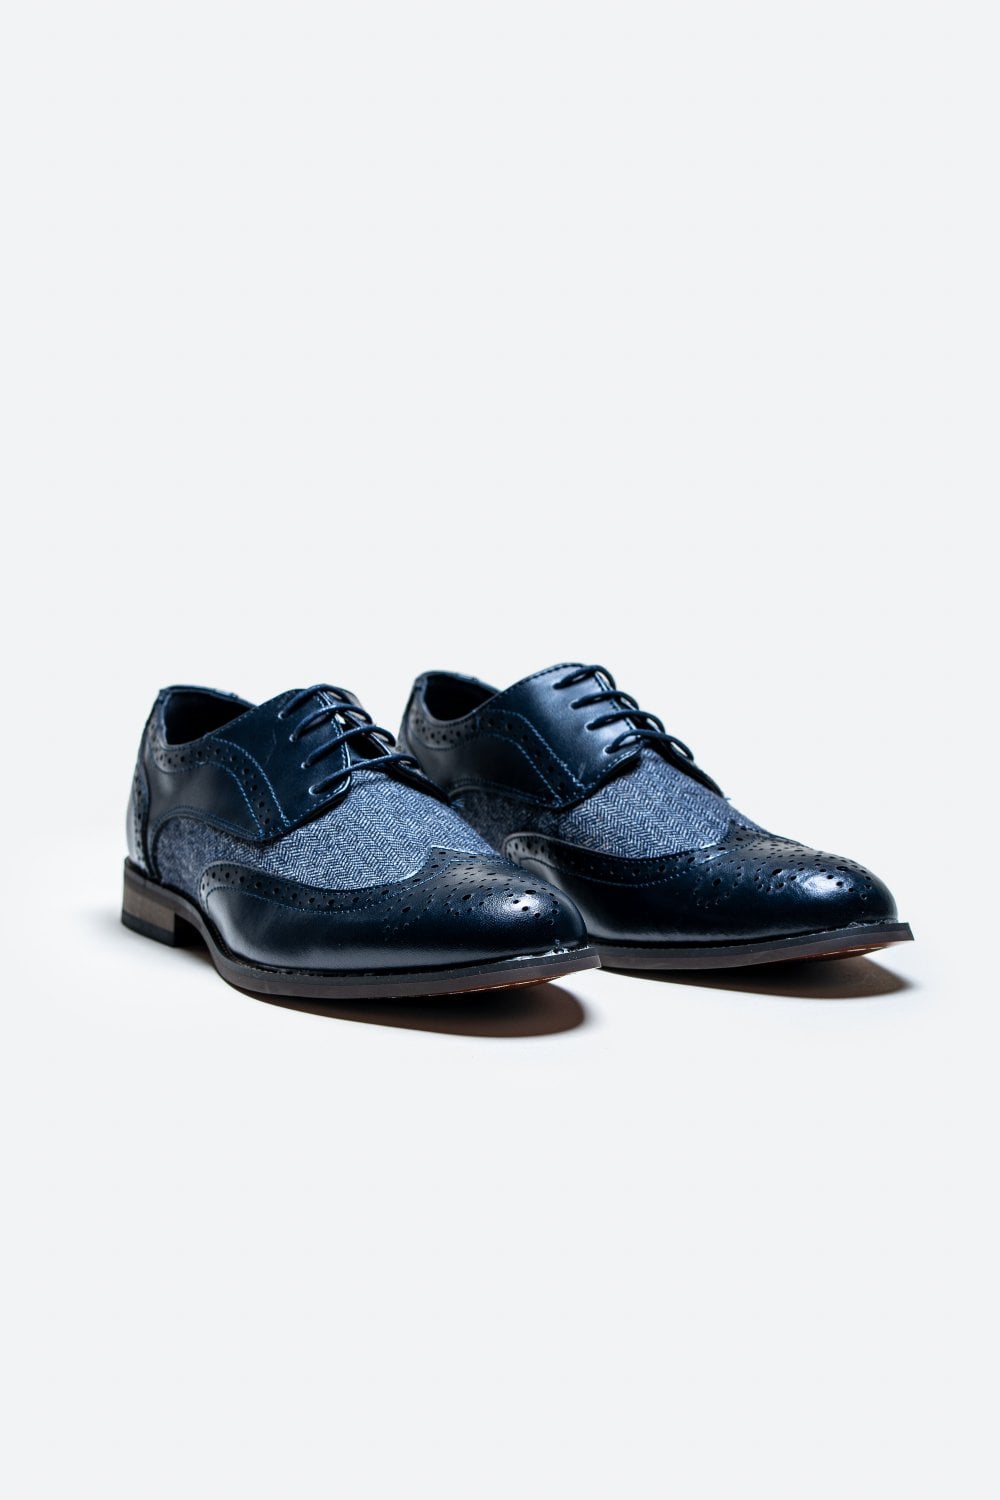 Cavani Oliver Schuhe Navy - Tweed - schoenen